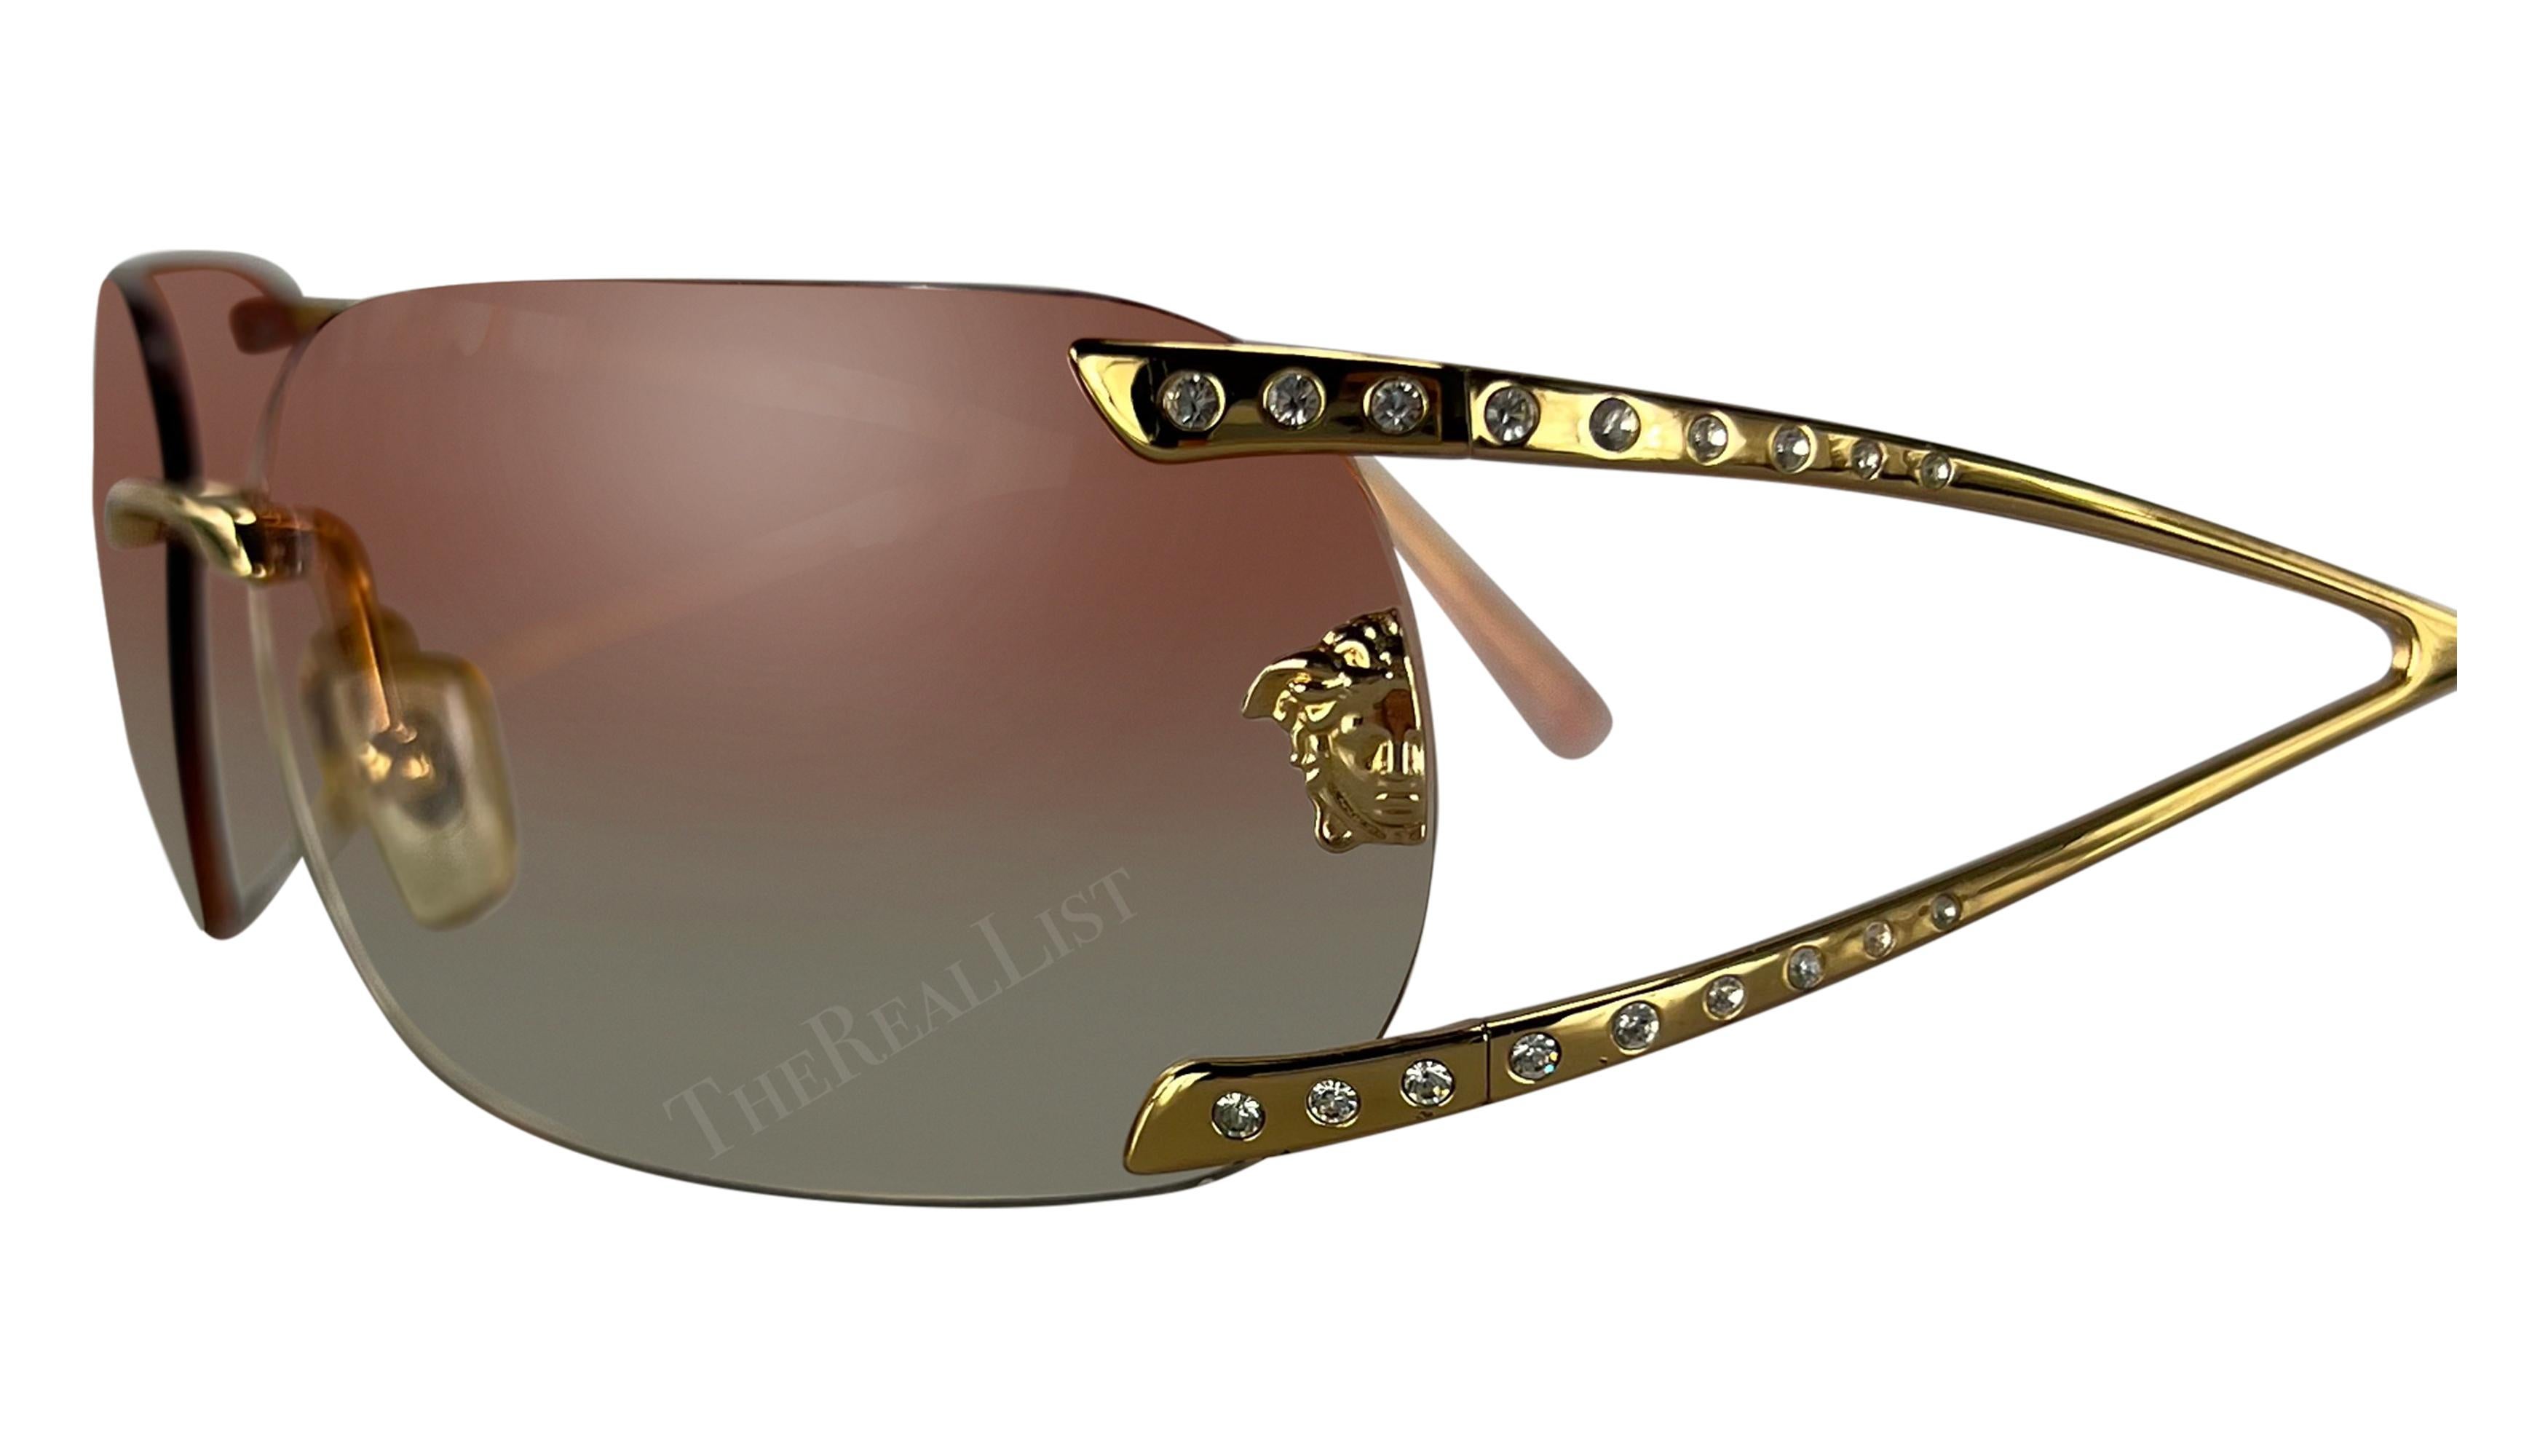 Datant du début des années 2000, ces lunettes de soleil oversize sans monture Versace, conçues par Donatella Versace, sont dotées de verres roses ombrés et de branches dorées rehaussées de strass. Elles sont complétées par un logo Versace Medusa sur